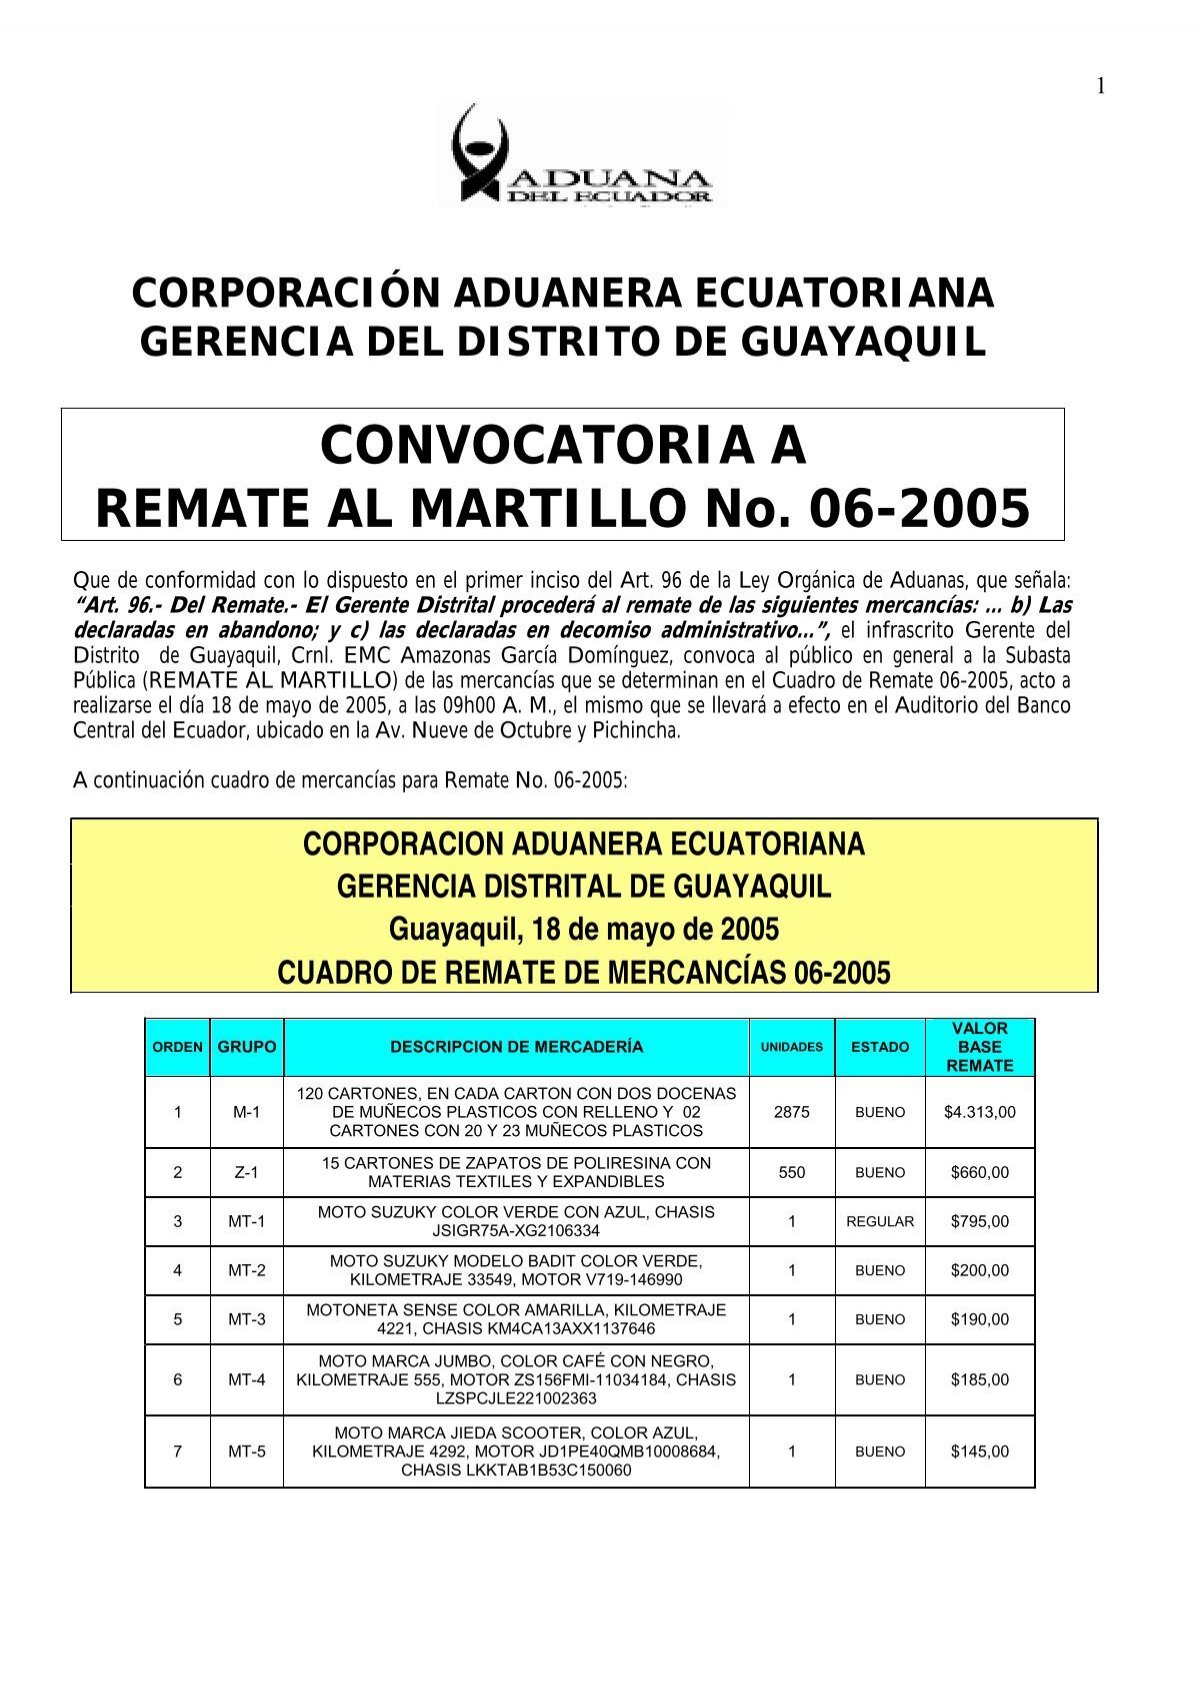 A REMATE MARTILLO No. 06-2005